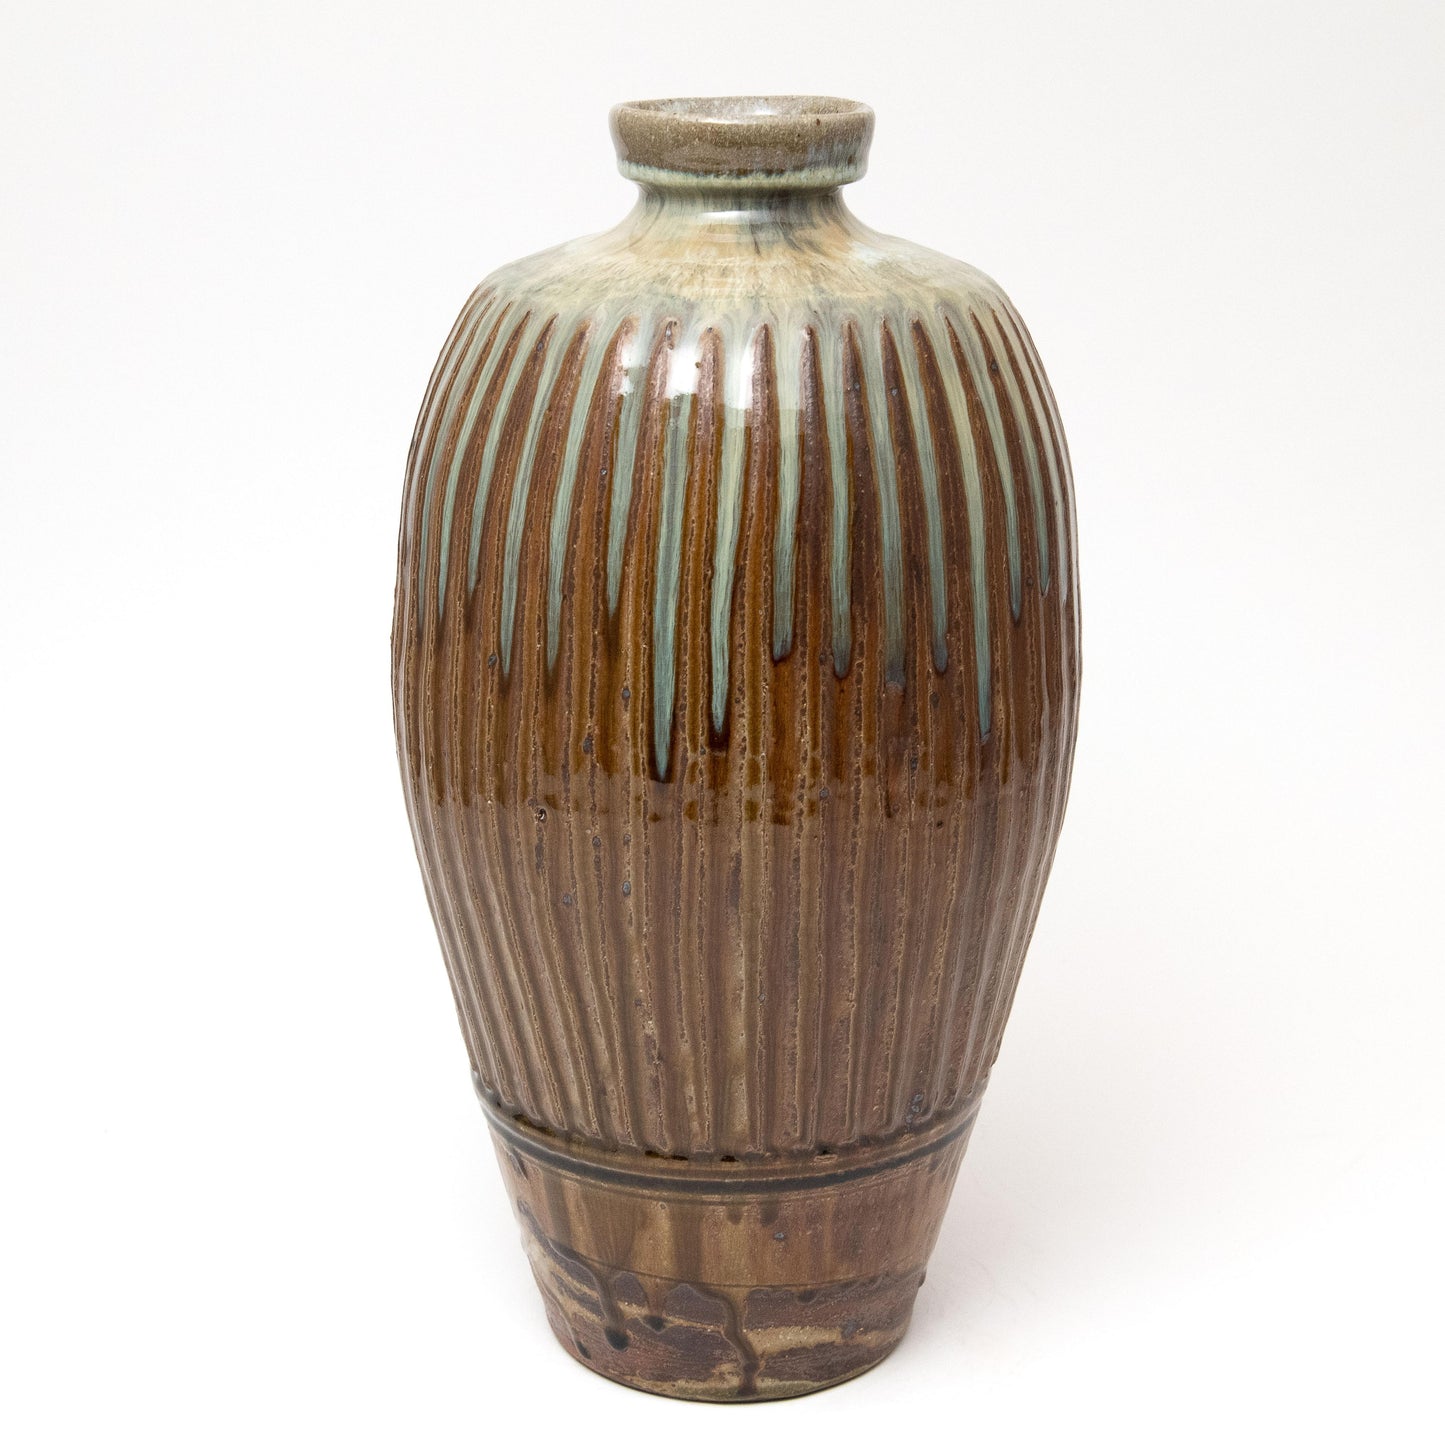 Fluted Vase